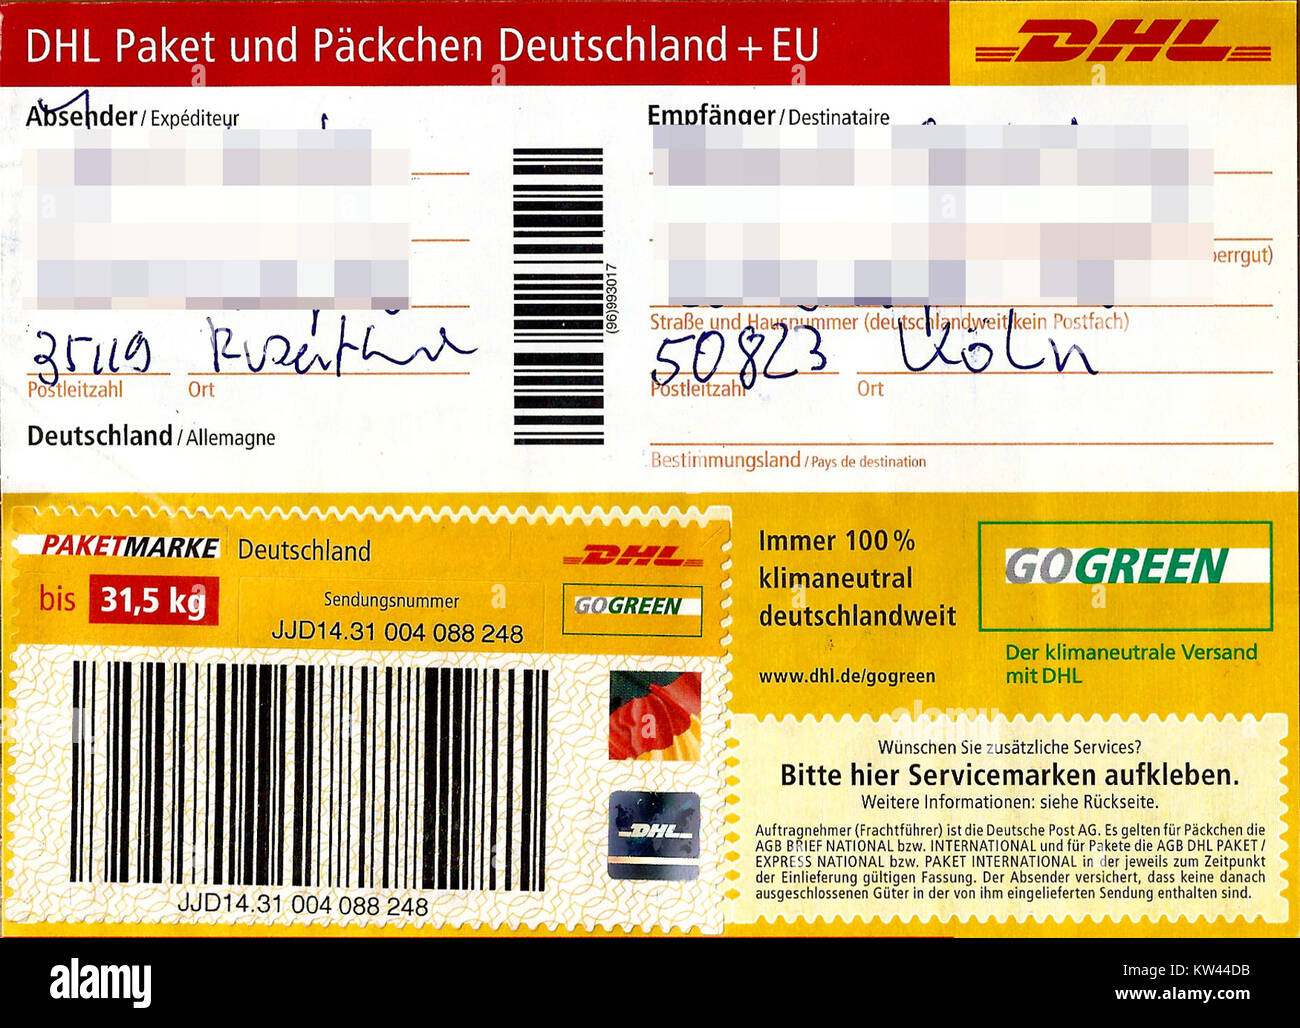 DHL Paketaufkleber Paket mit Paketmarke bis 31,5 kg 2016 Foto de stock